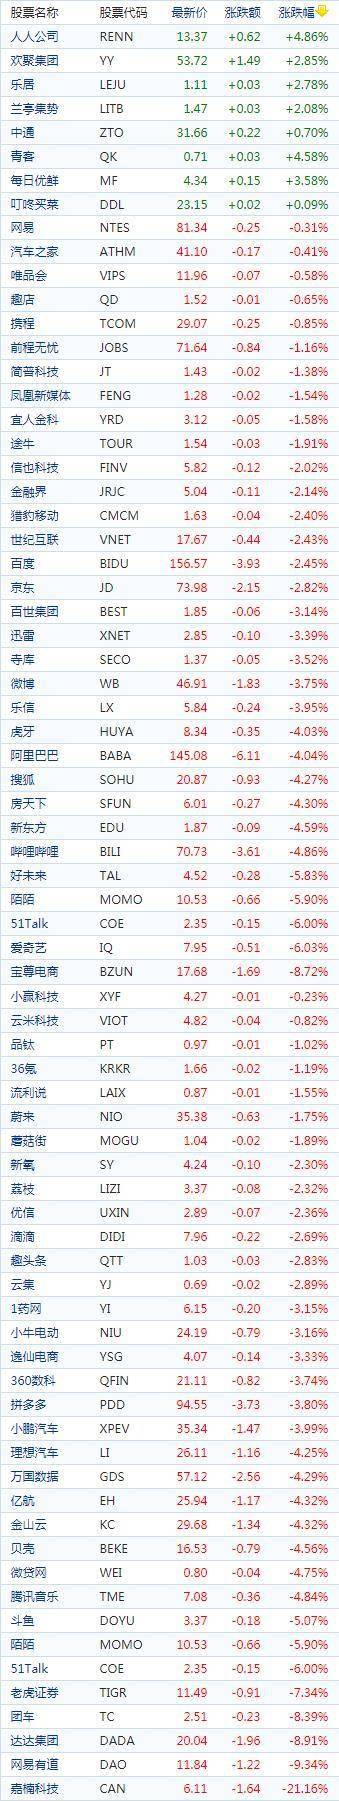 中国概念股周五普遍下跌 邮轮及航空股多数走高